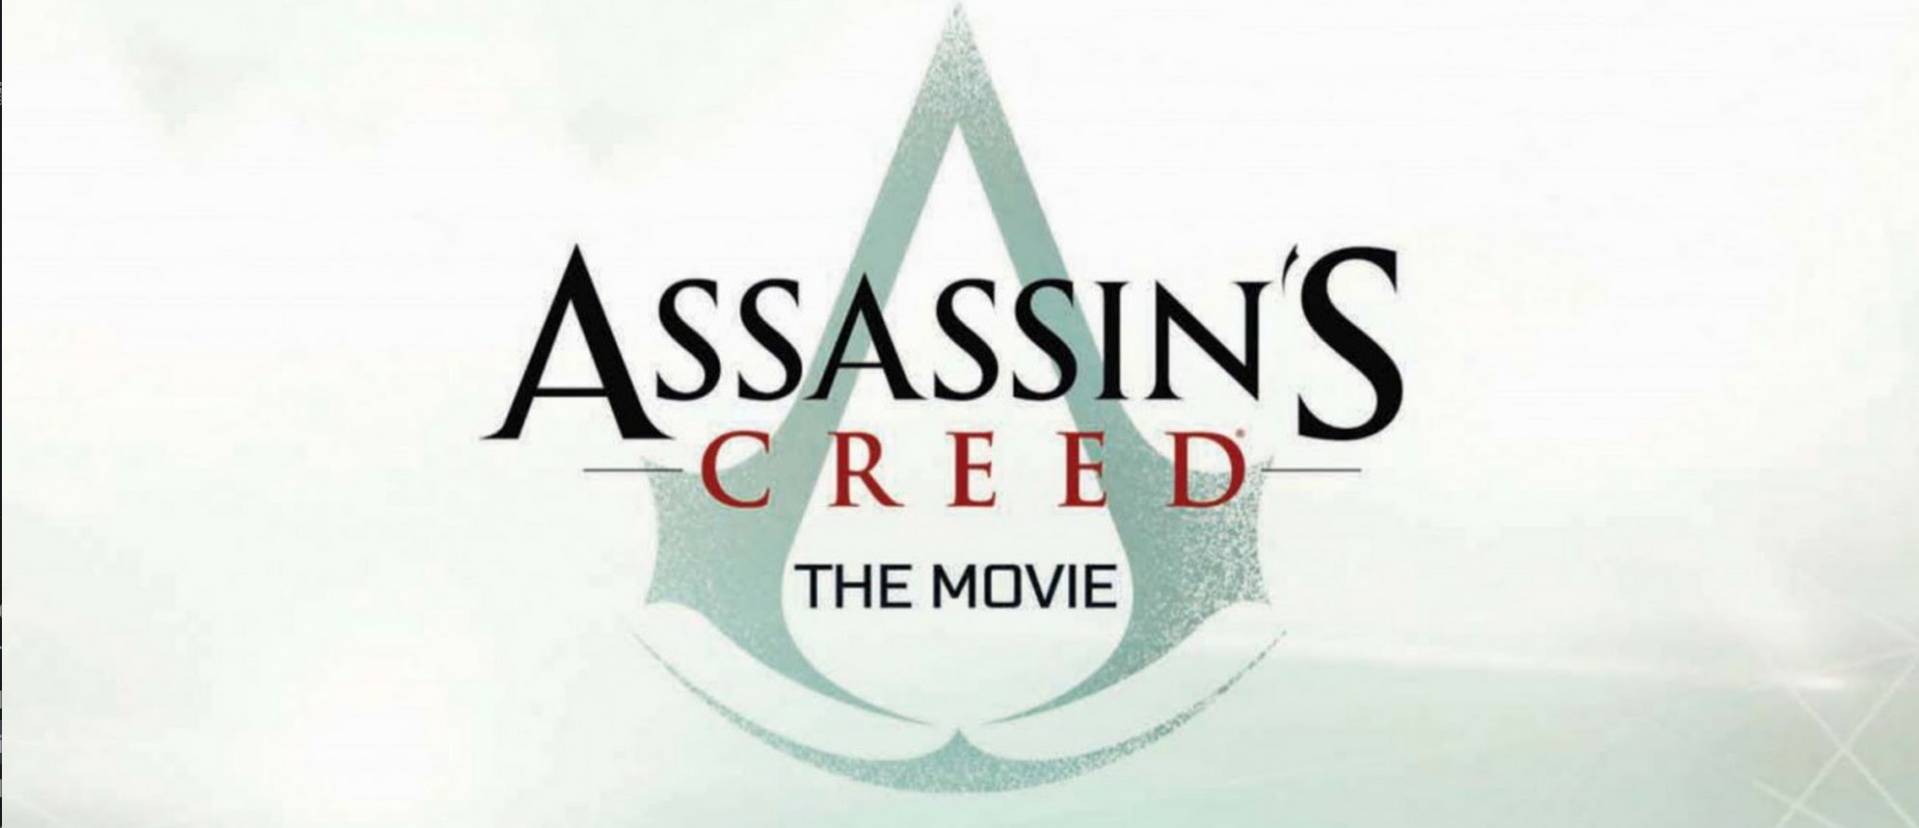 Elkezdődött az Assassin's Creed film forgatása 